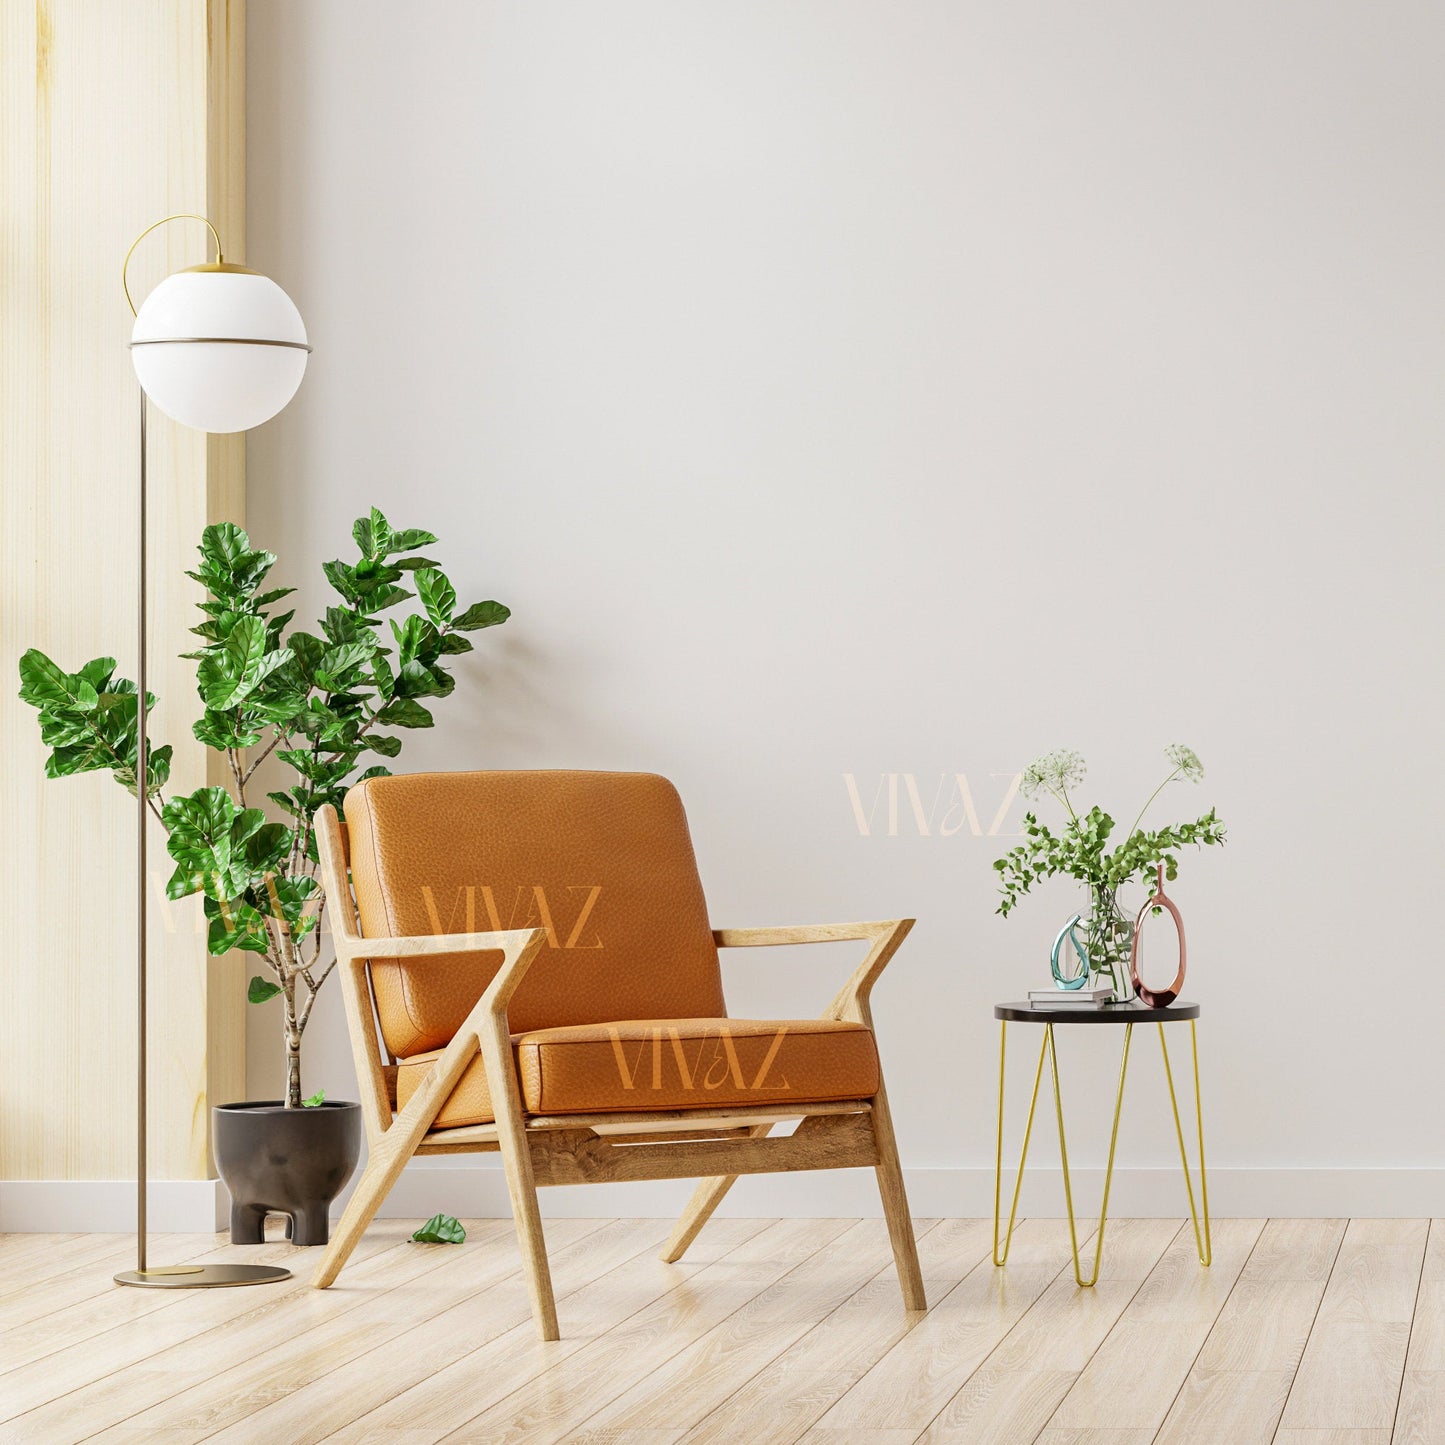 Leather Chair Cushion · Tan by Modoun Home Decor